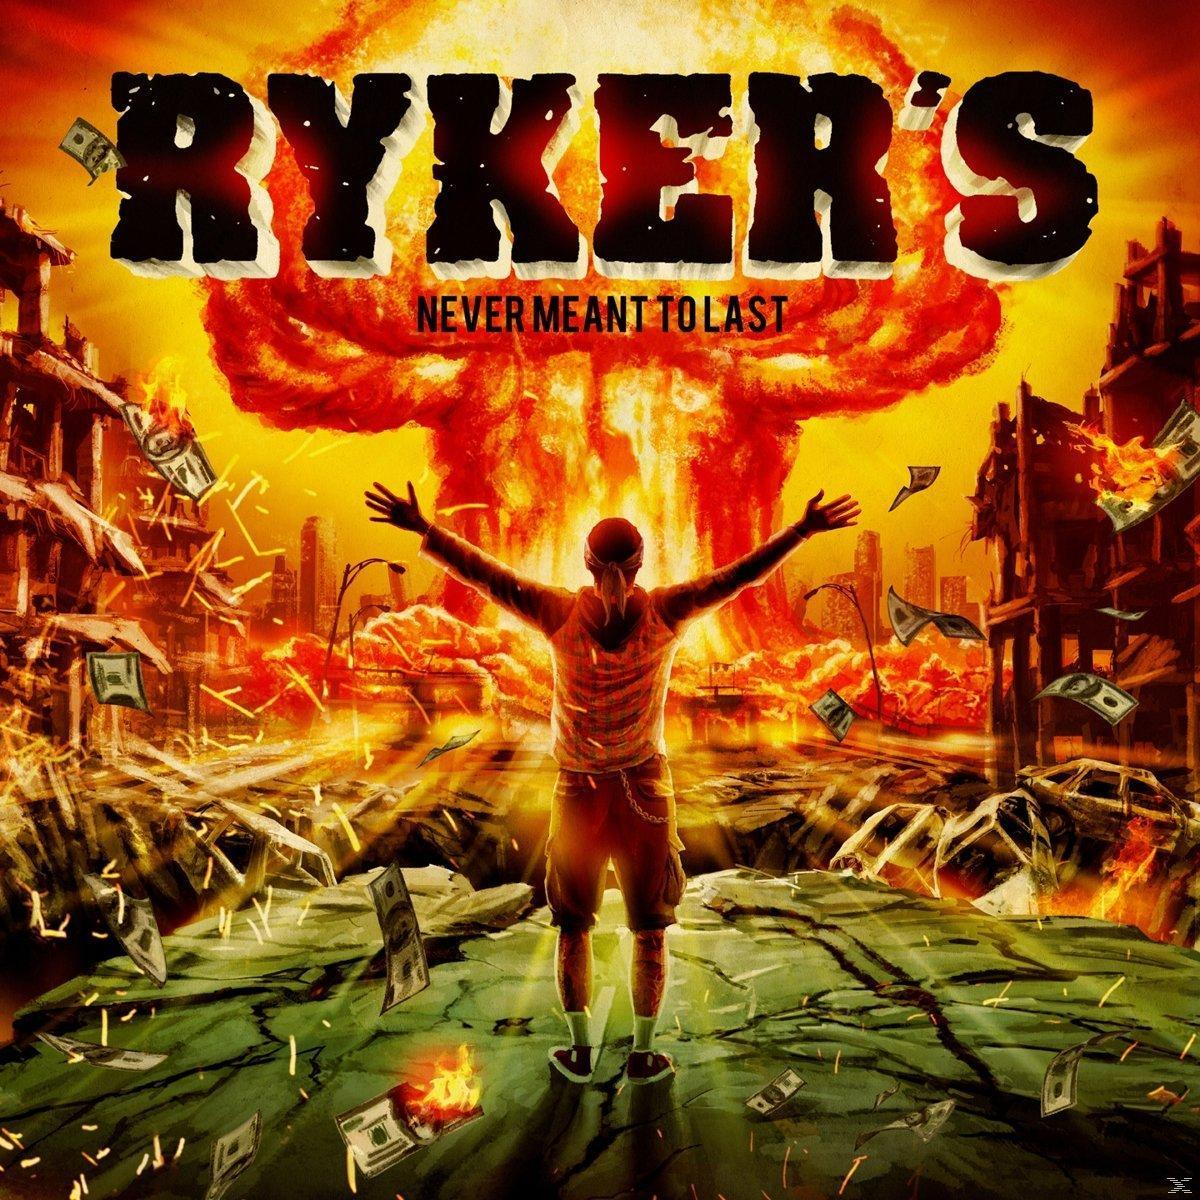 (Ltd.Vinyl) - Meant (Vinyl) Never Ryker\'s To - Last